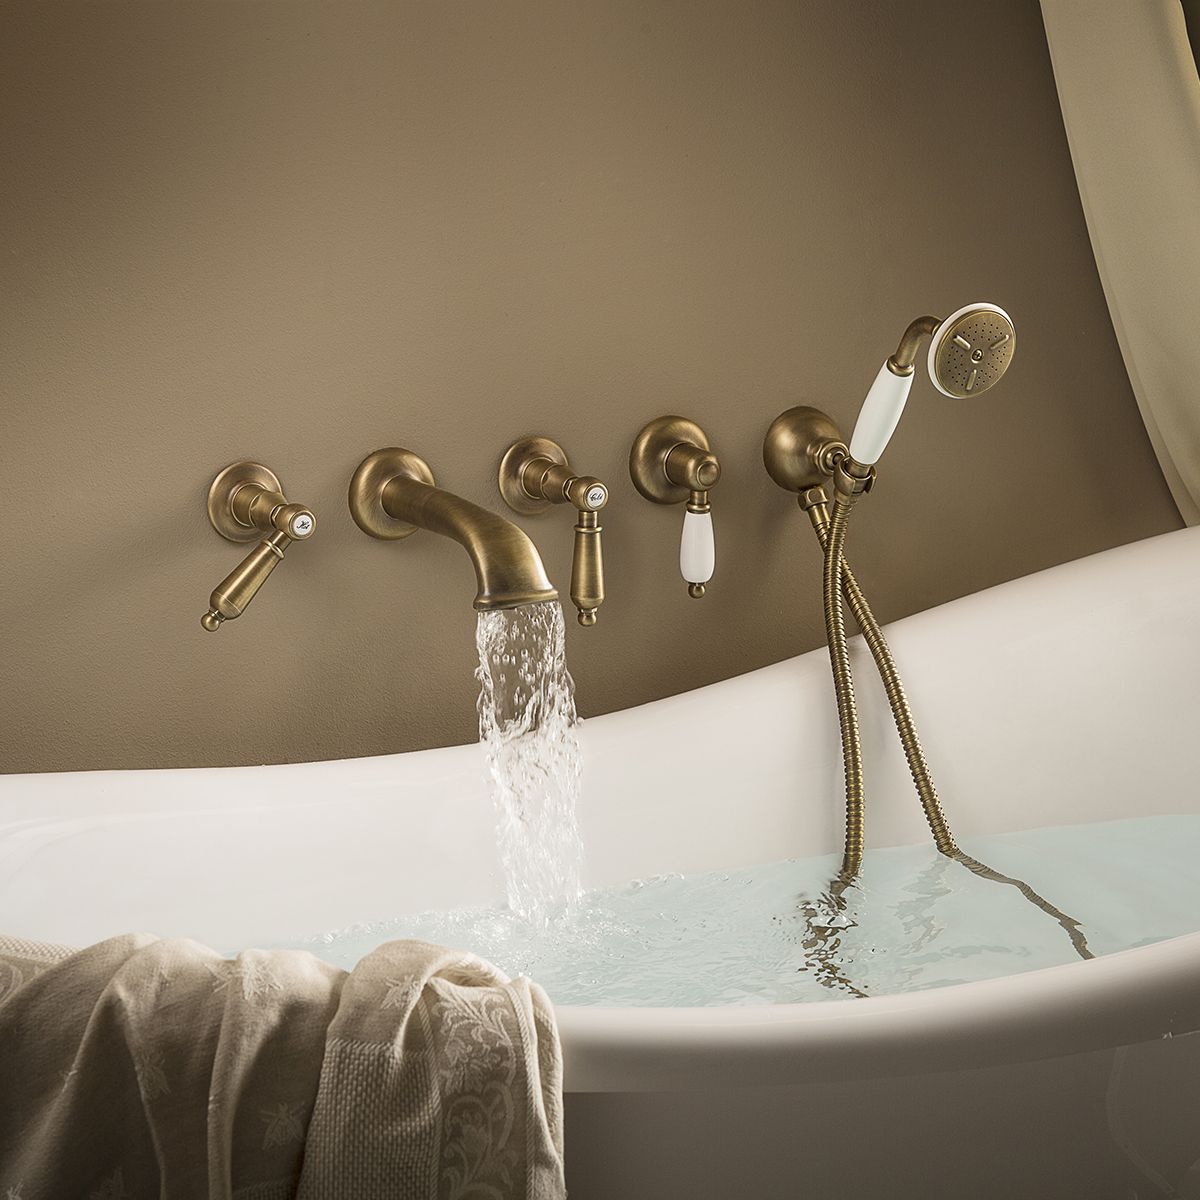  Vòi bồn tắm năm lỗ gắn tường cổ điển bằng đồng Daytime Style - 69145 